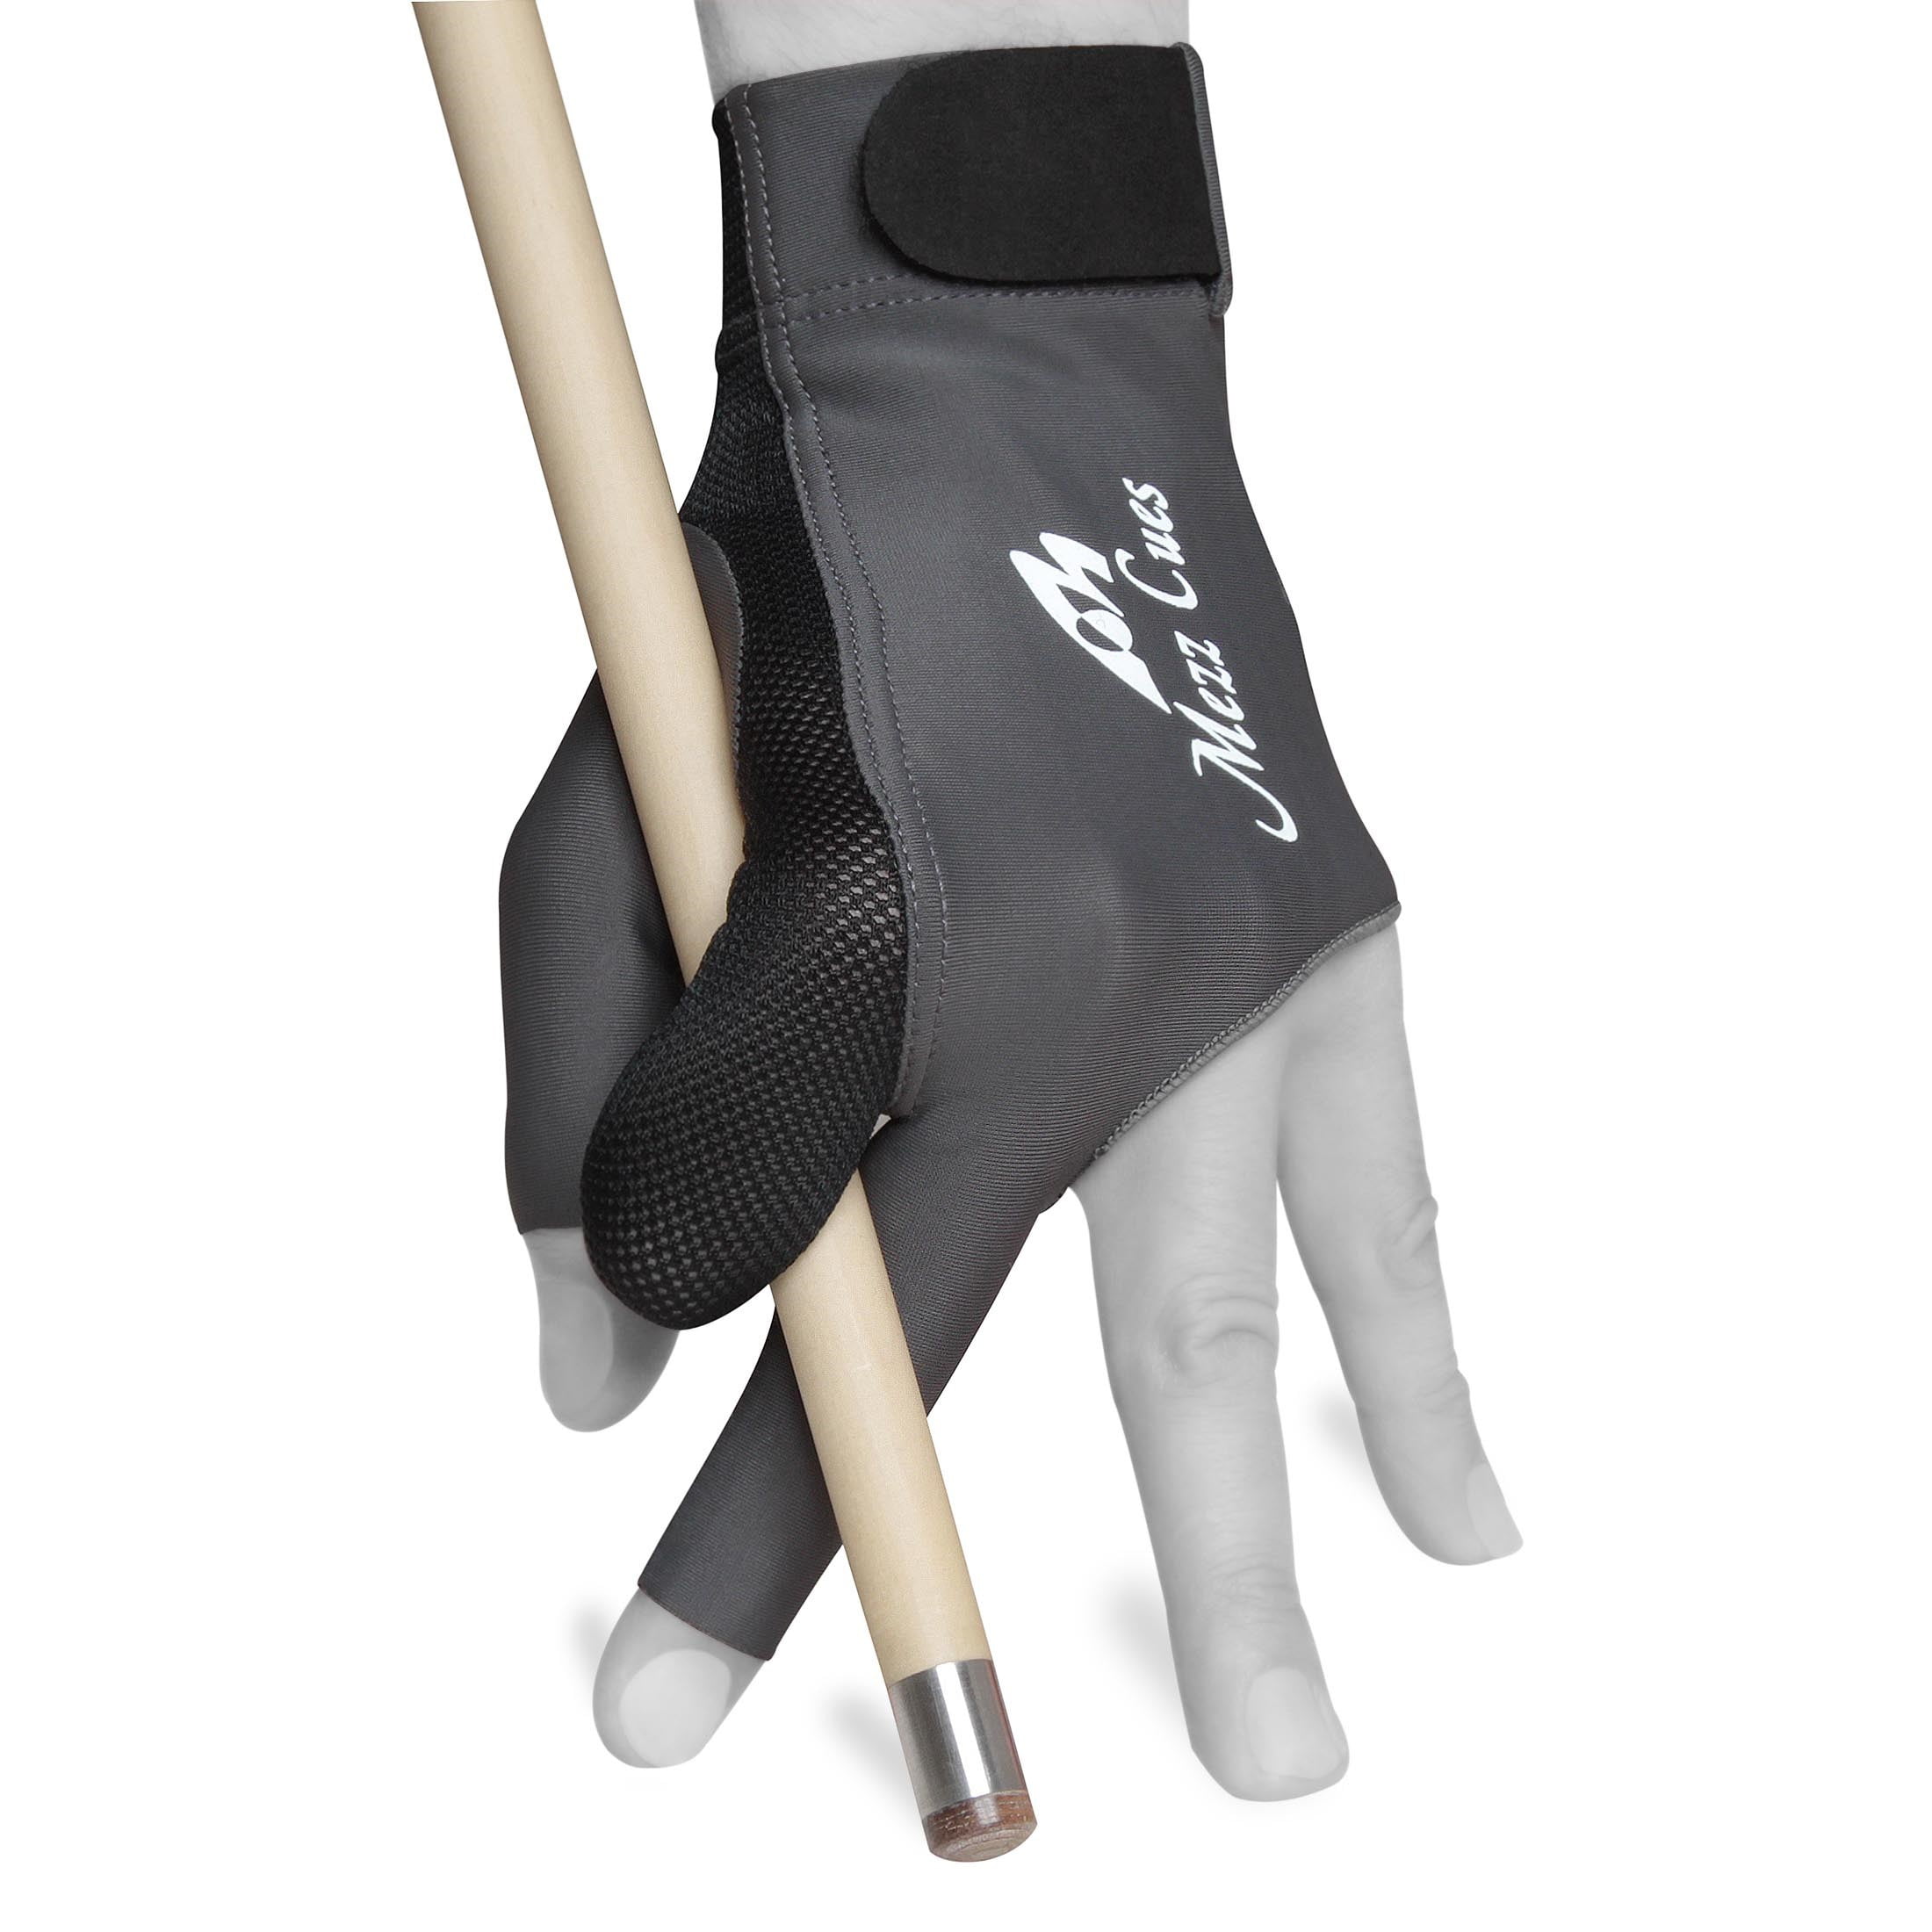 Mezz Premium Billiard Glove Fits Either Hand 